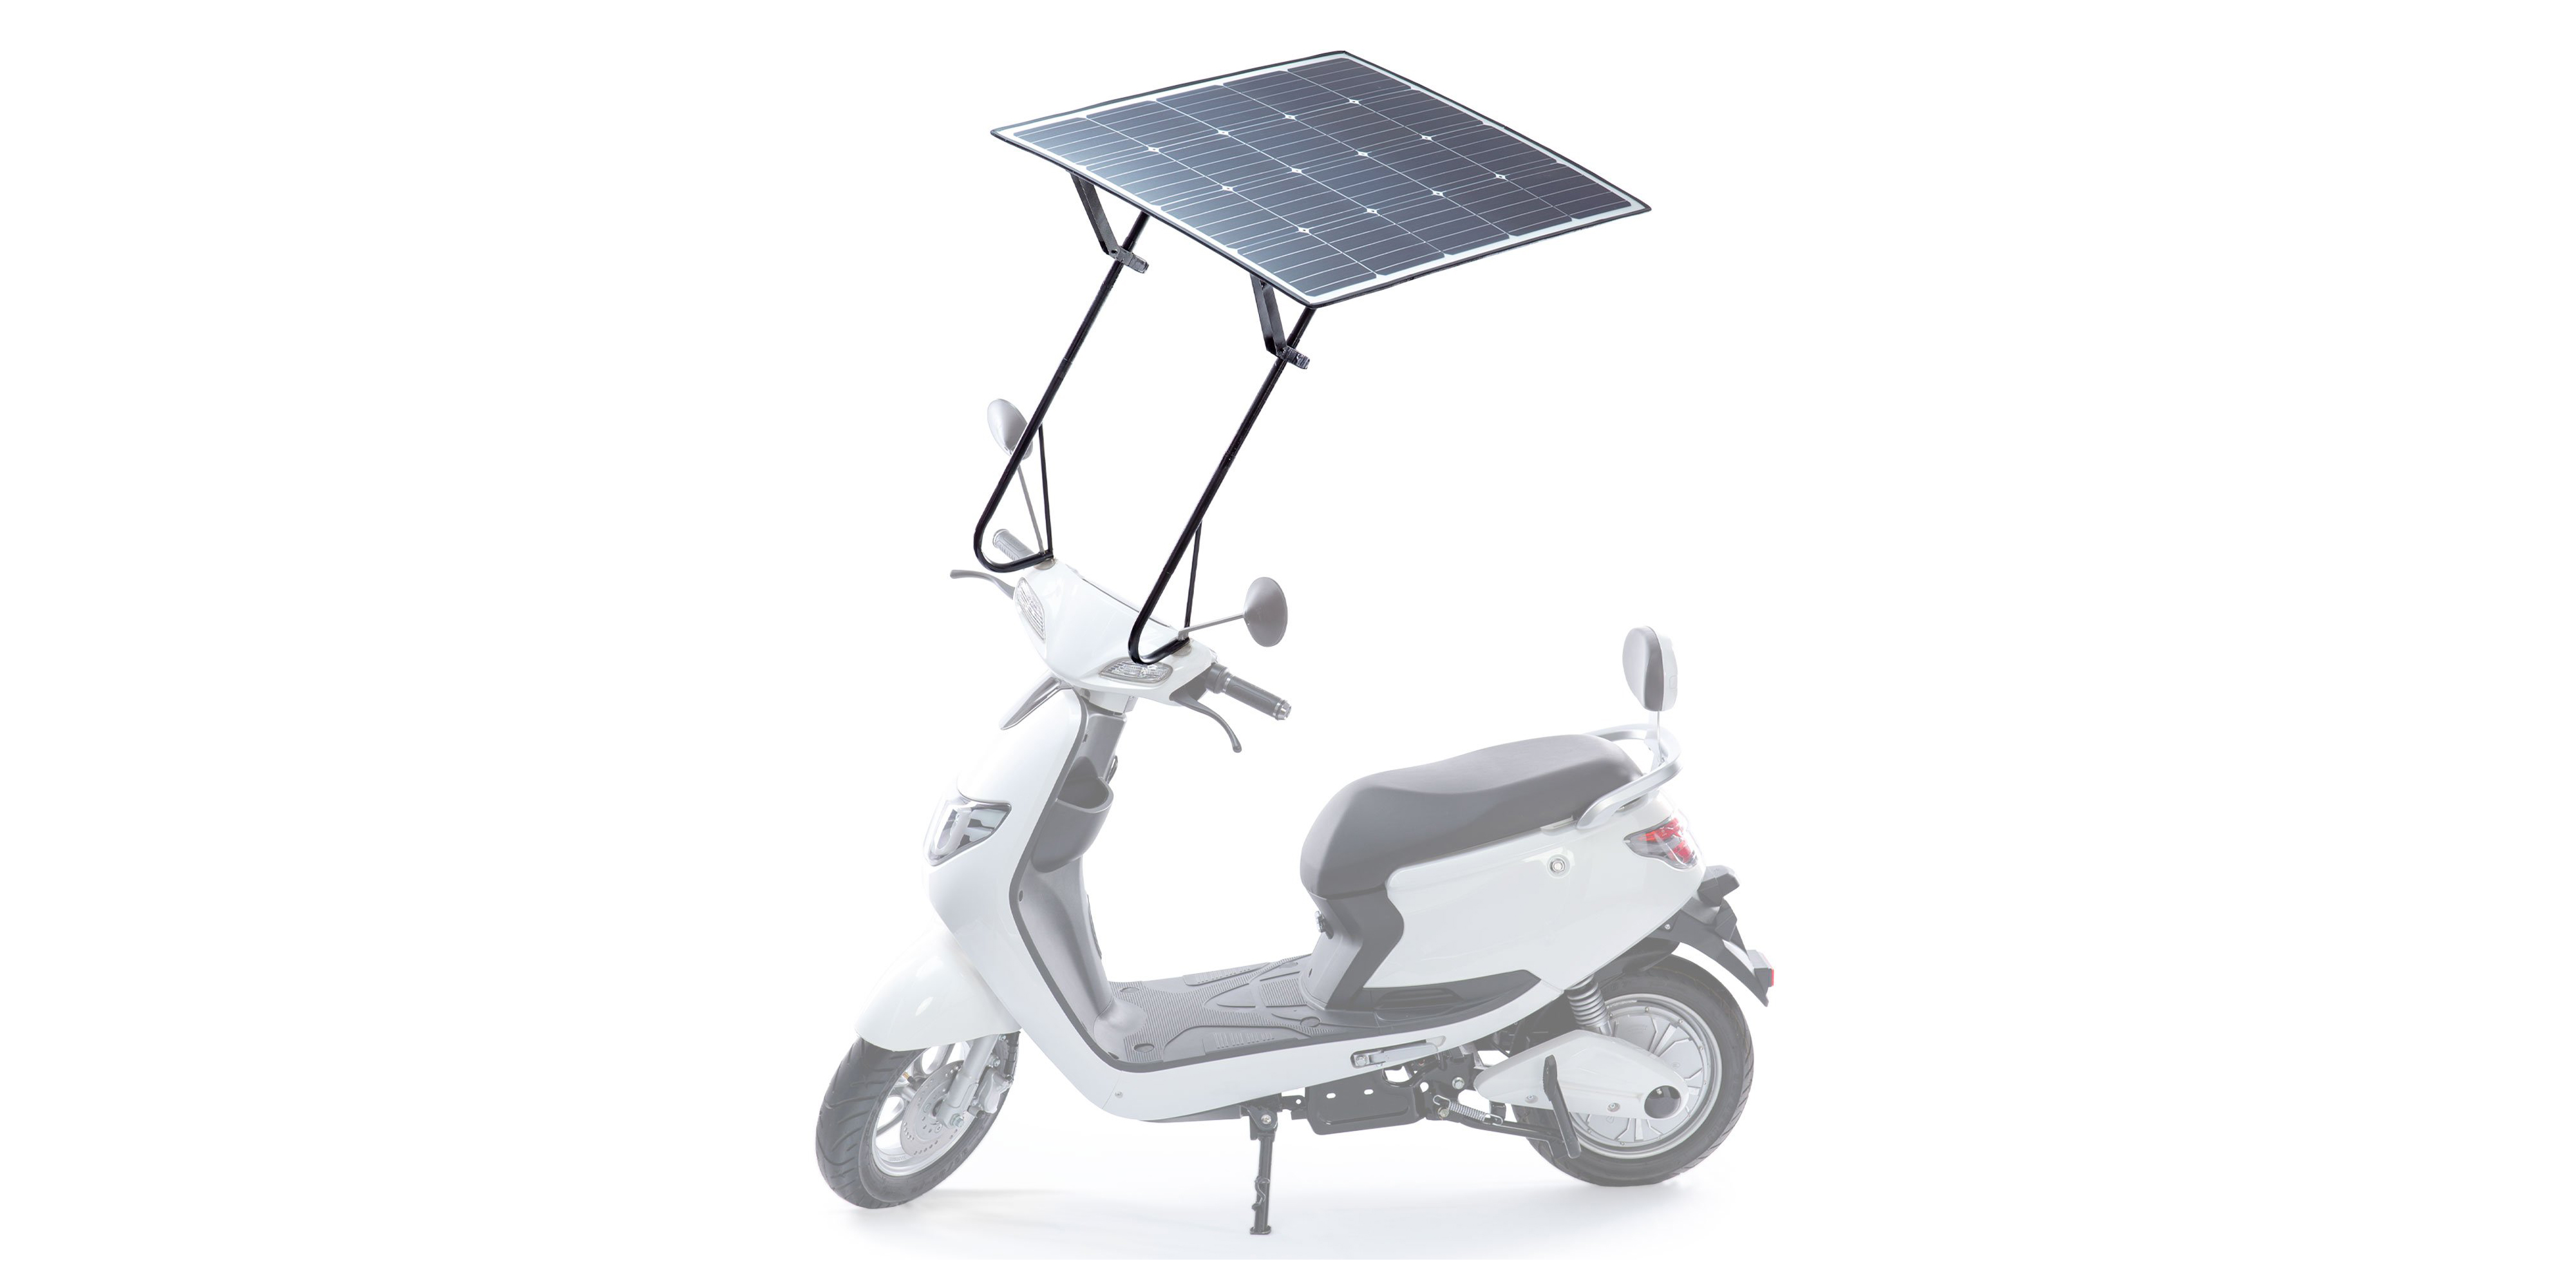 Scooter électrique MotoSola MS125 avec balais solaires